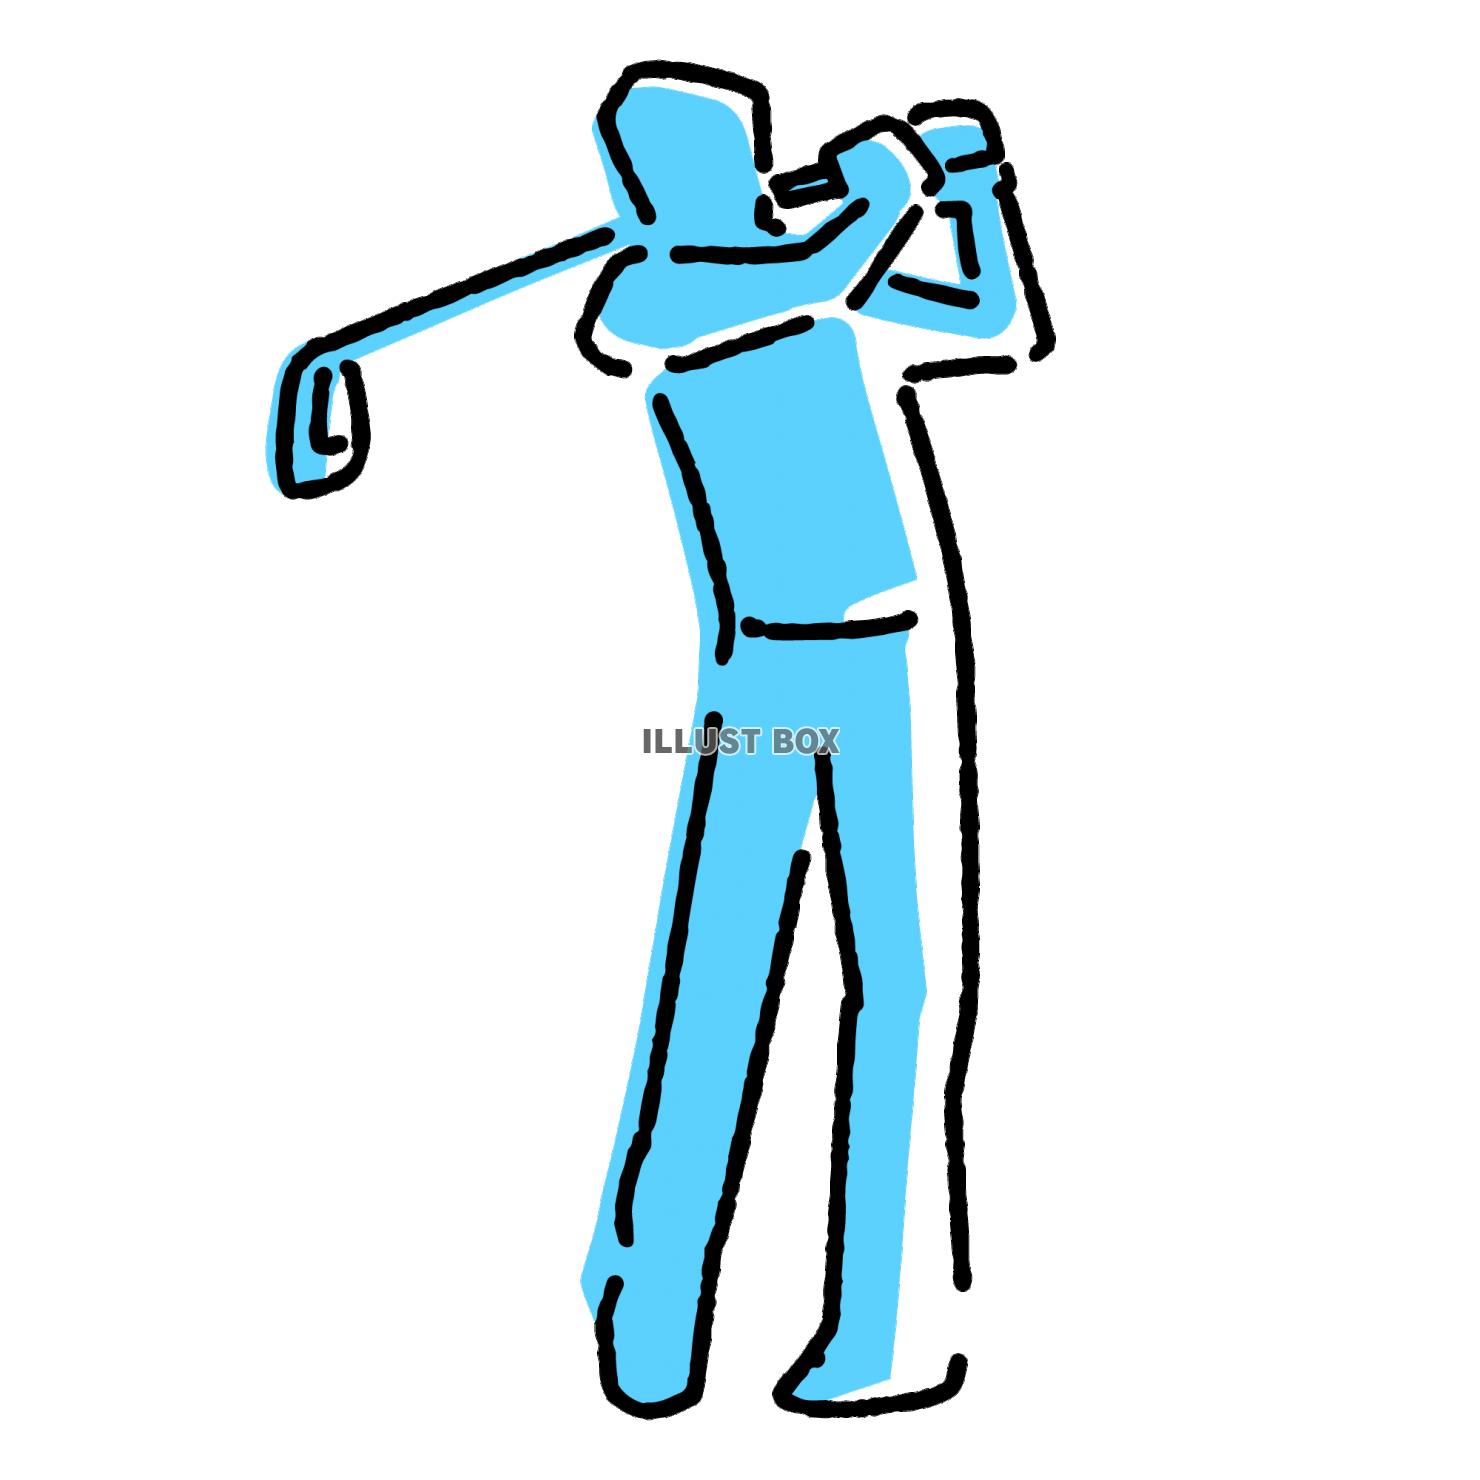 ゴルフスイングをする人物のイラスト